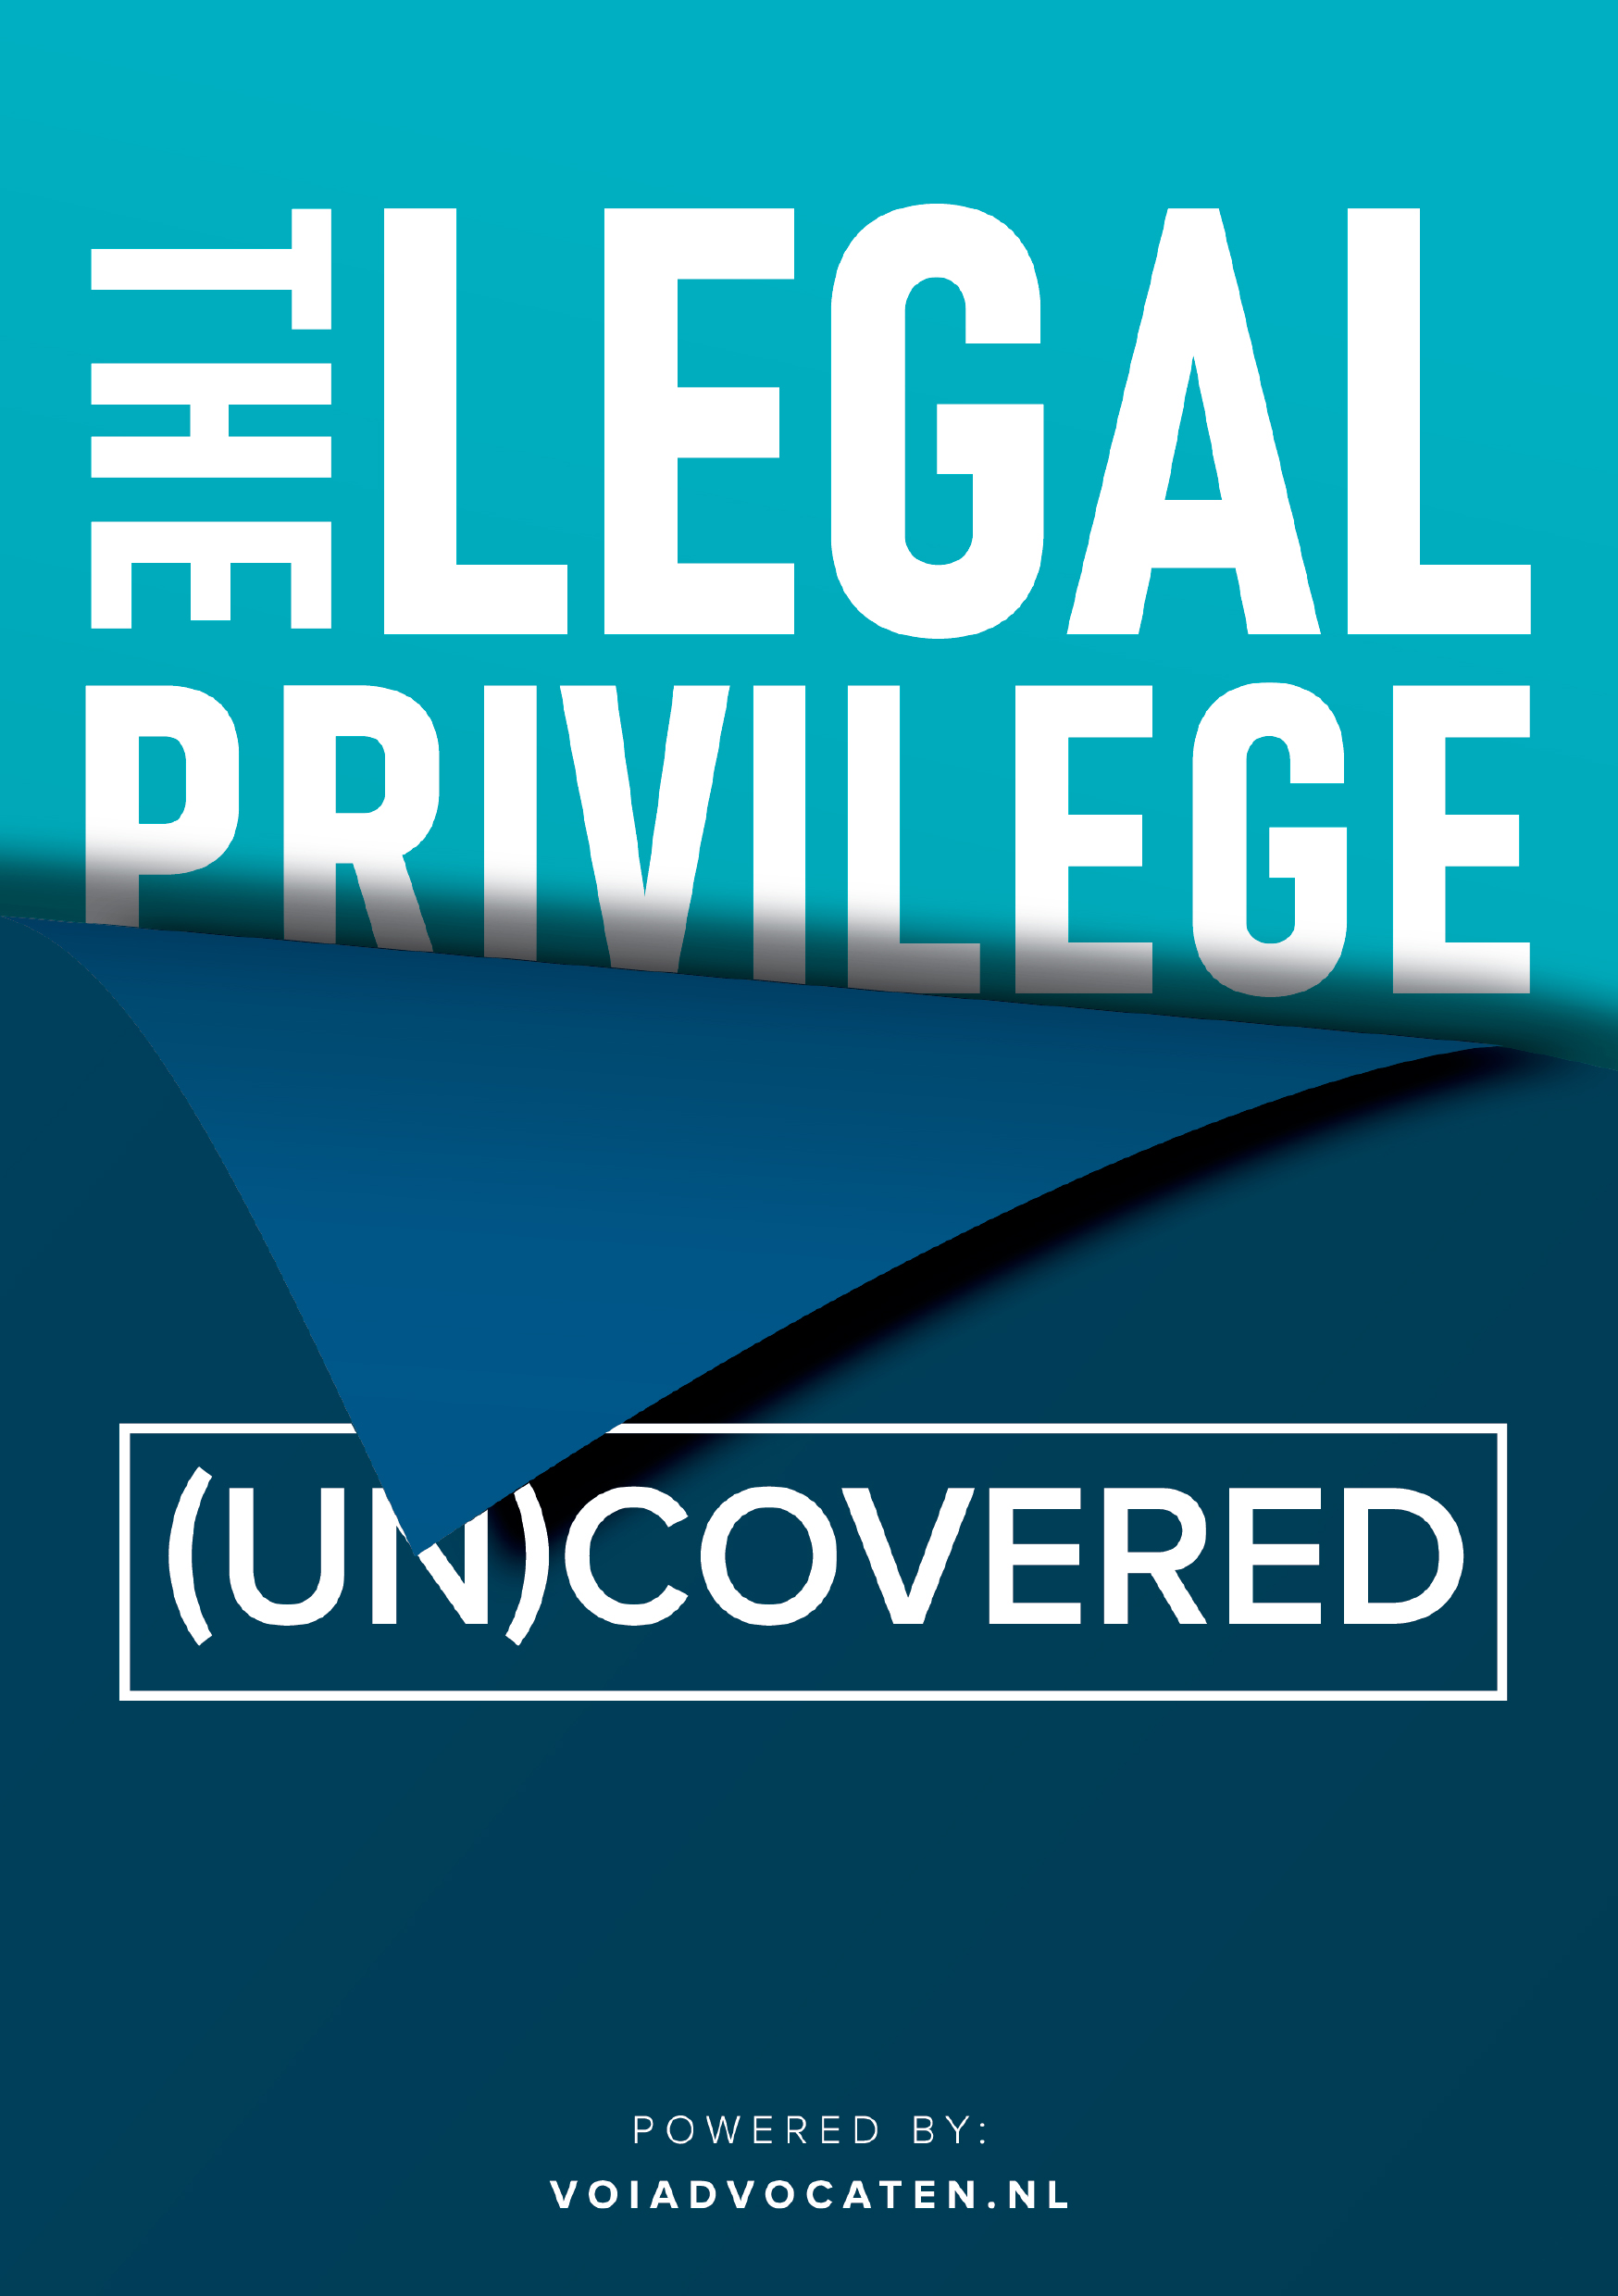 The Legal Privilege (Un)Covered